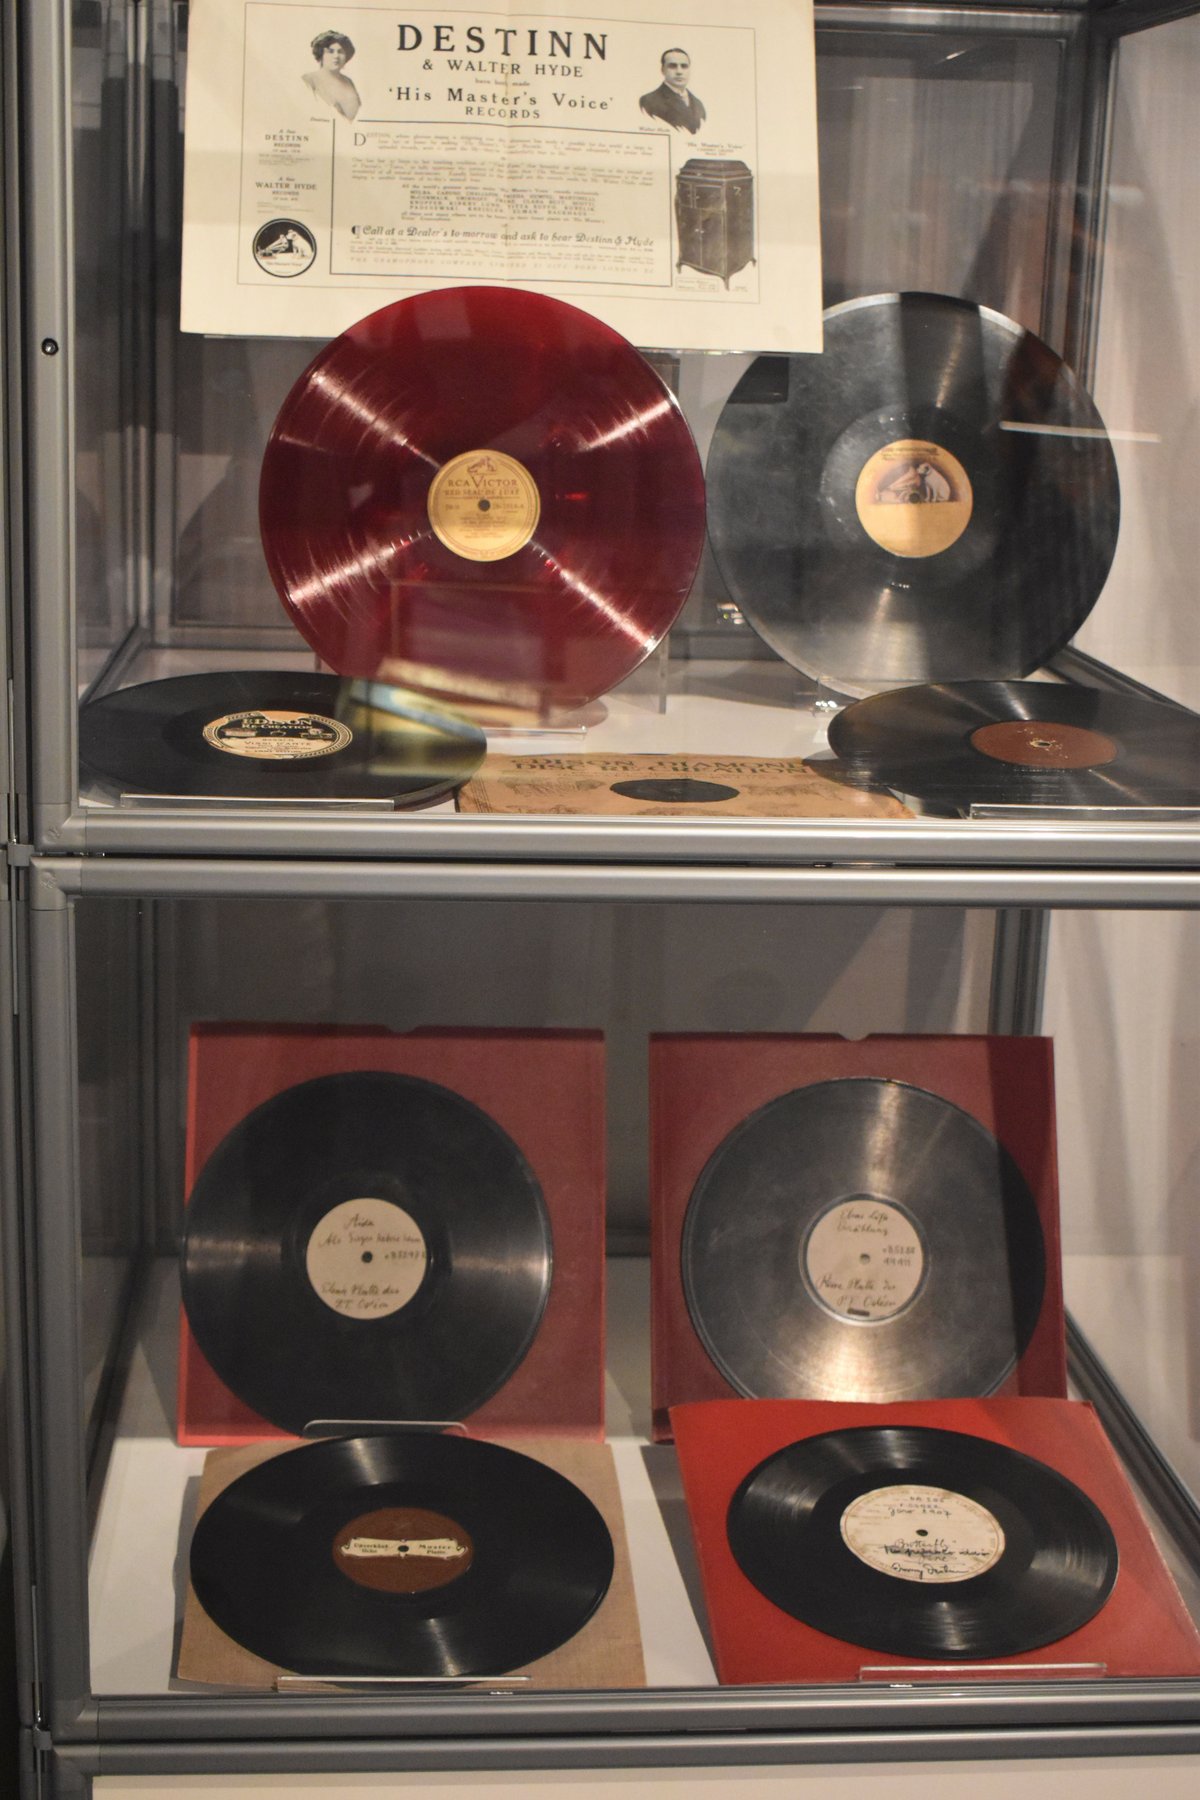 Gramodesky Muzeu se podařilo v minulých letech získat unikátní gramofonové desky s nahrávkami pěveckého umění Emy Destinnové. Jsou mezi nimi i zkušební výlisky s rukopisnými poznámkami pěvkyně či jejího manžela. První gramofonovou desku natočila diva v roce 1901. Kolekce desek má podle znalců nevyčíslitelnou cenu.